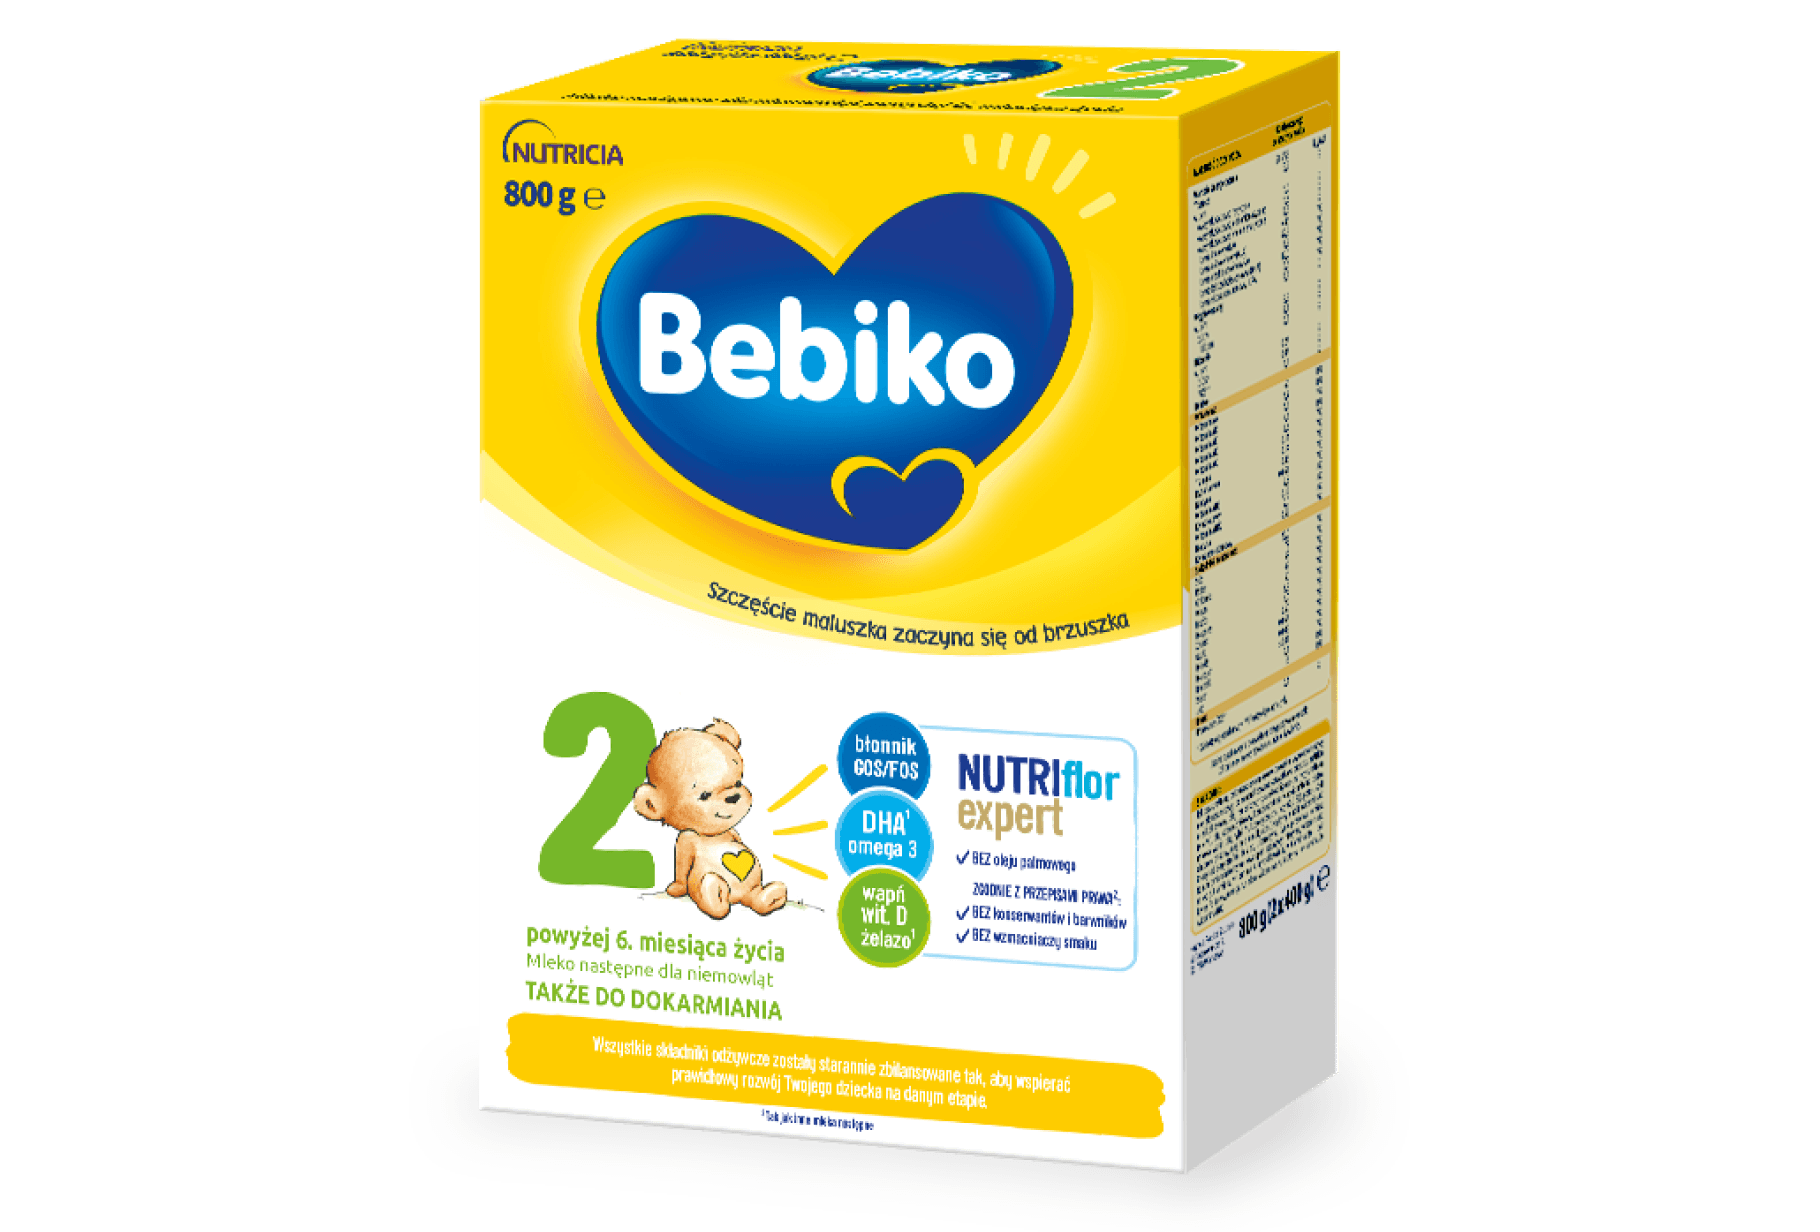 Bebiko 2 NUTRIflor Expert zawiera (1).png